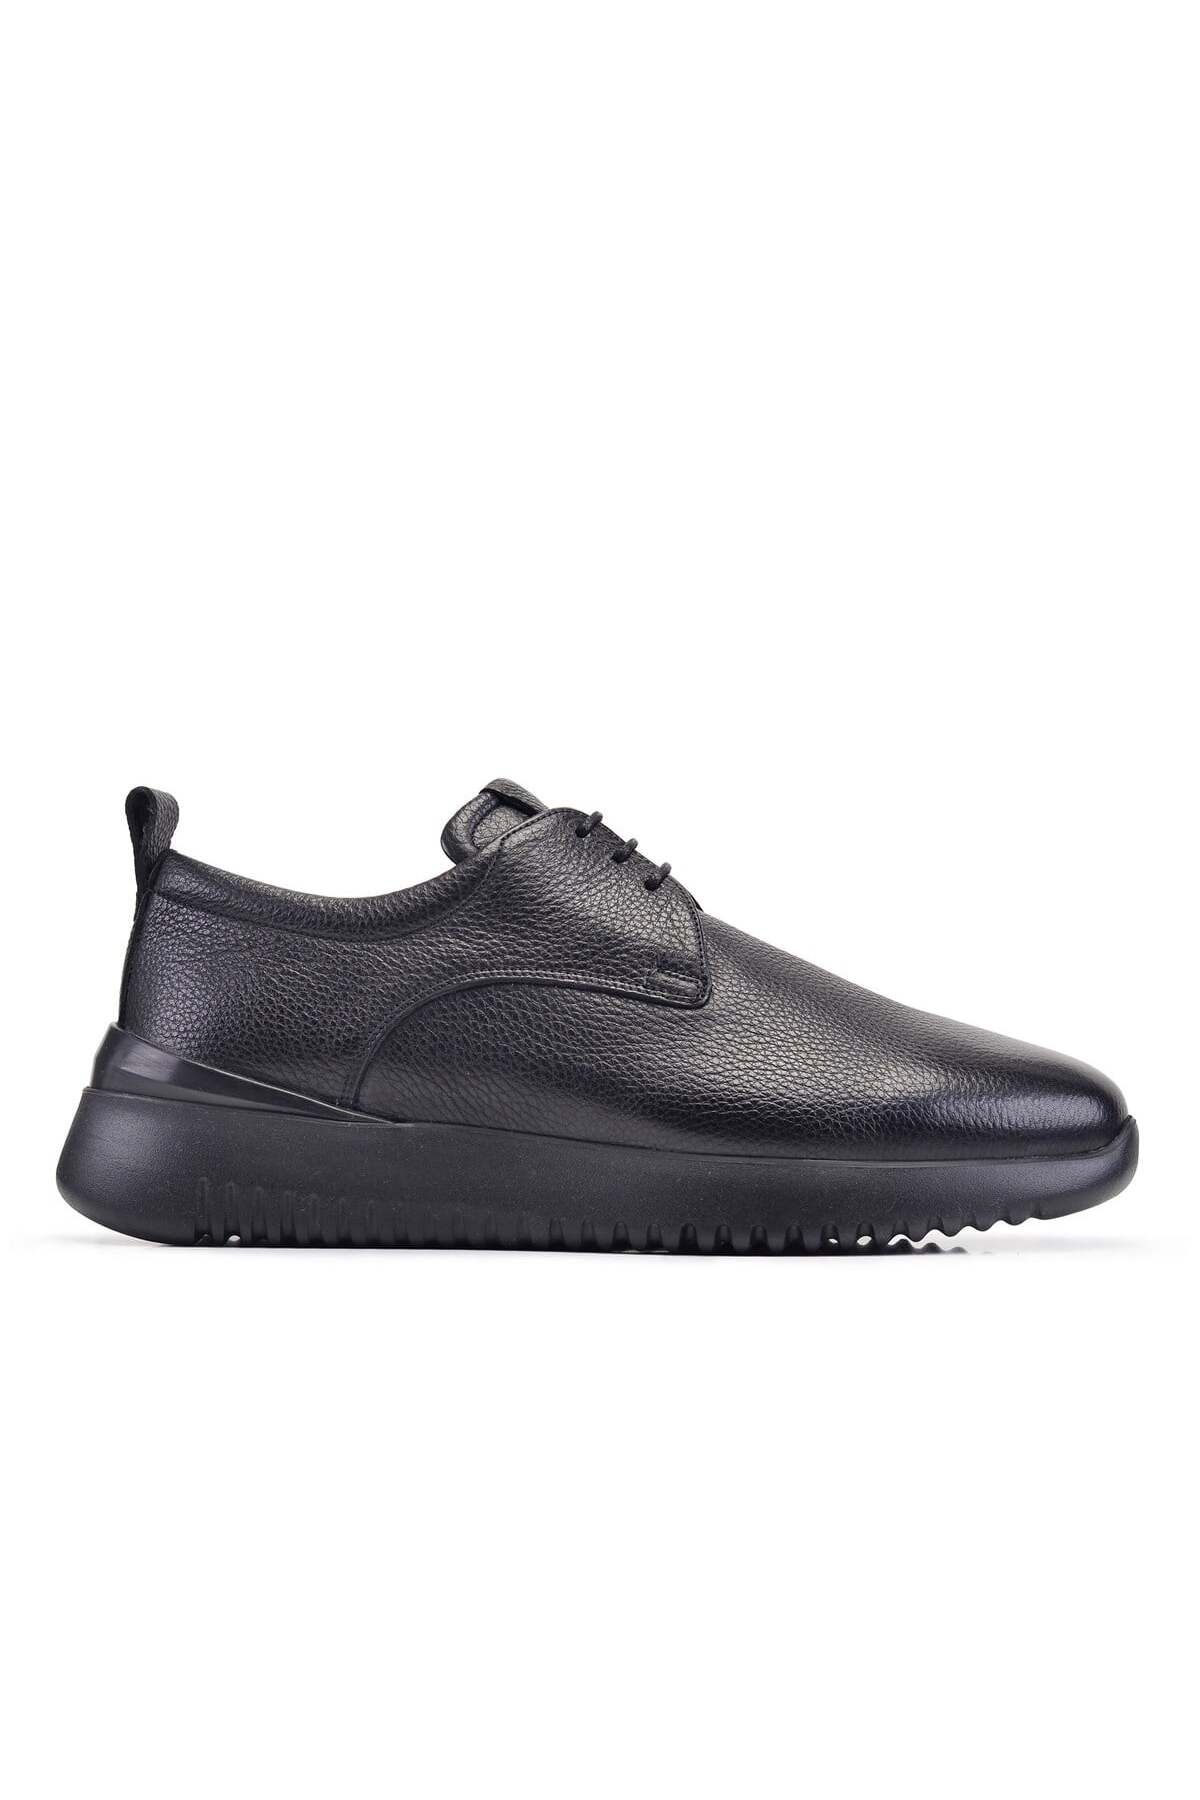 Nevzat Onay Siyah Bağcıklı Sneaker Erkek Ayakkabı -12410-